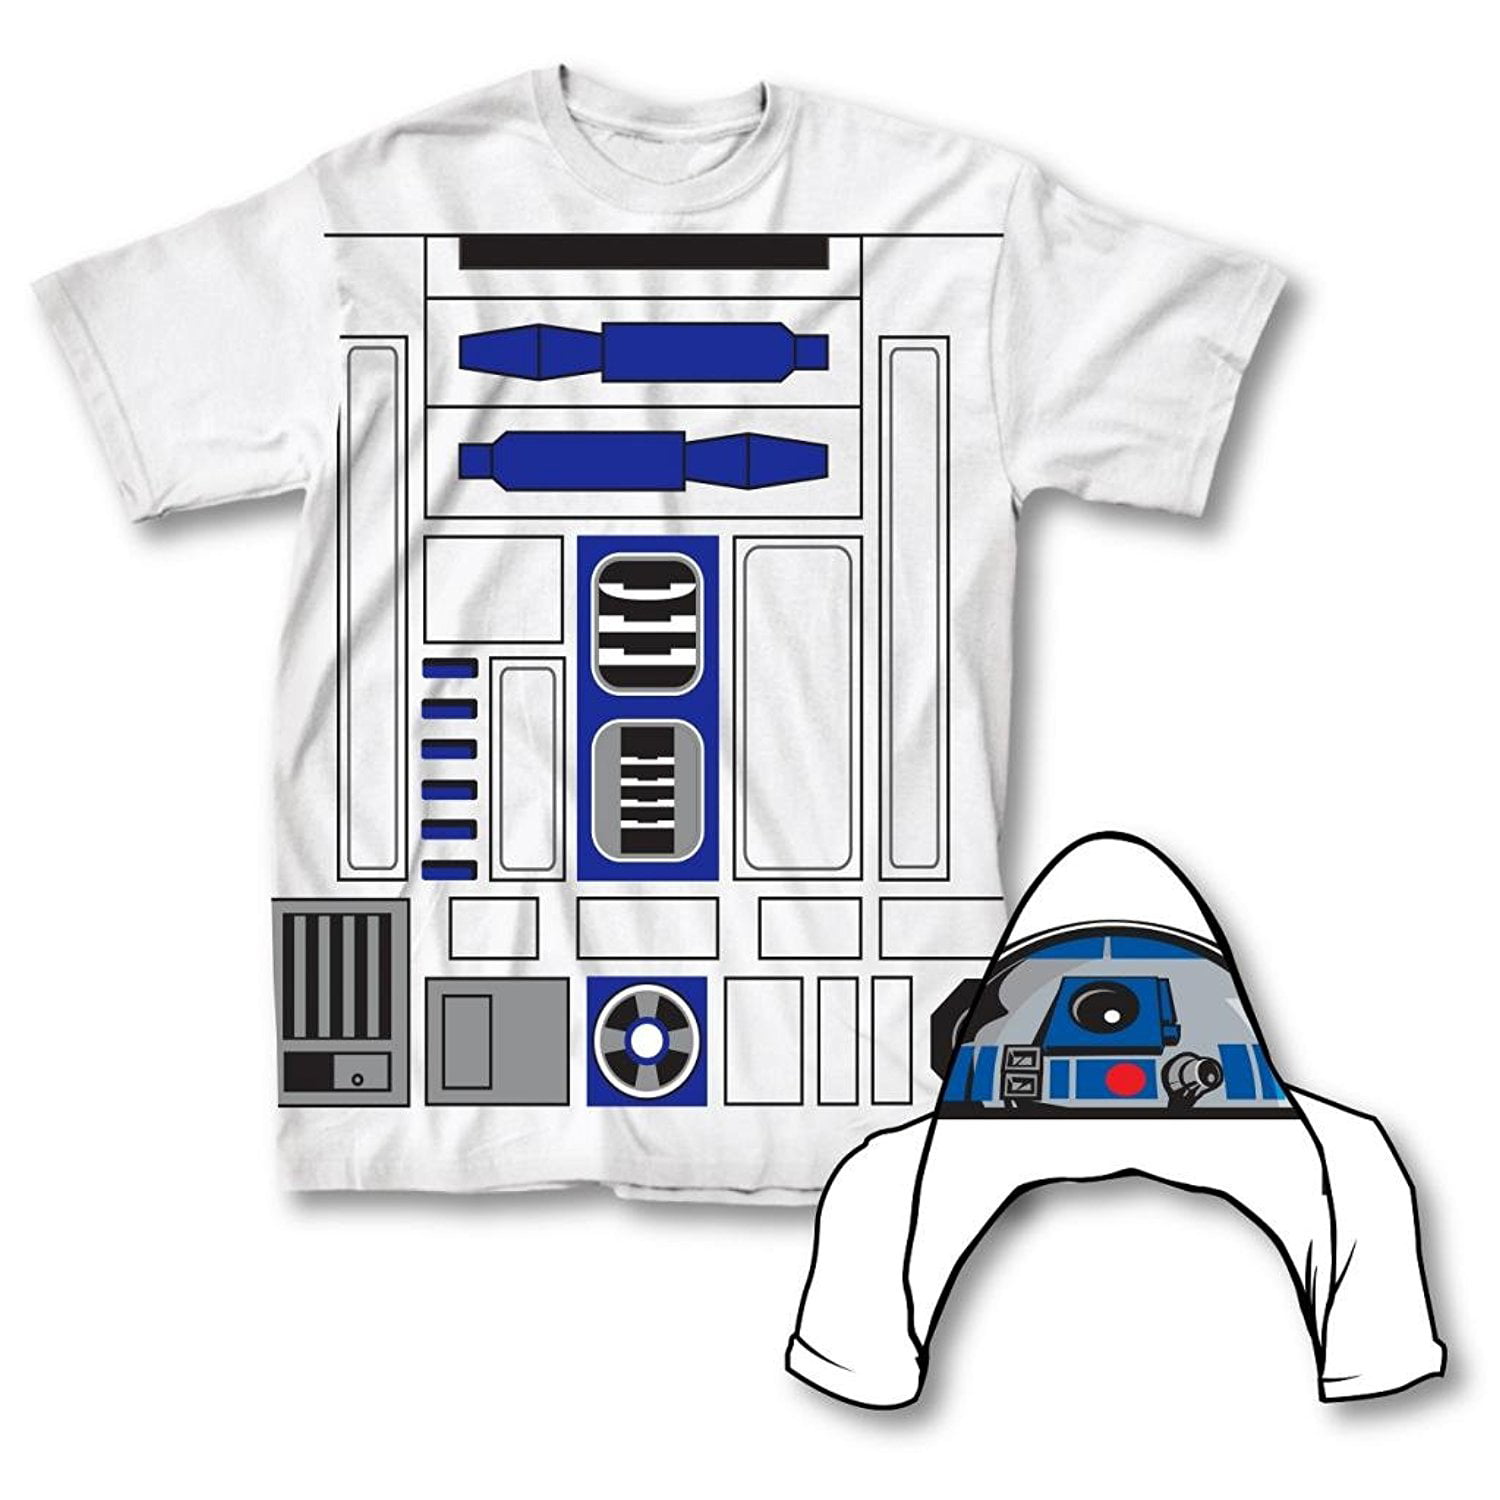 Buy Star Wars I Am R2-D2 Mens Flip Costume Adult T-Shirt at Walmart.com.